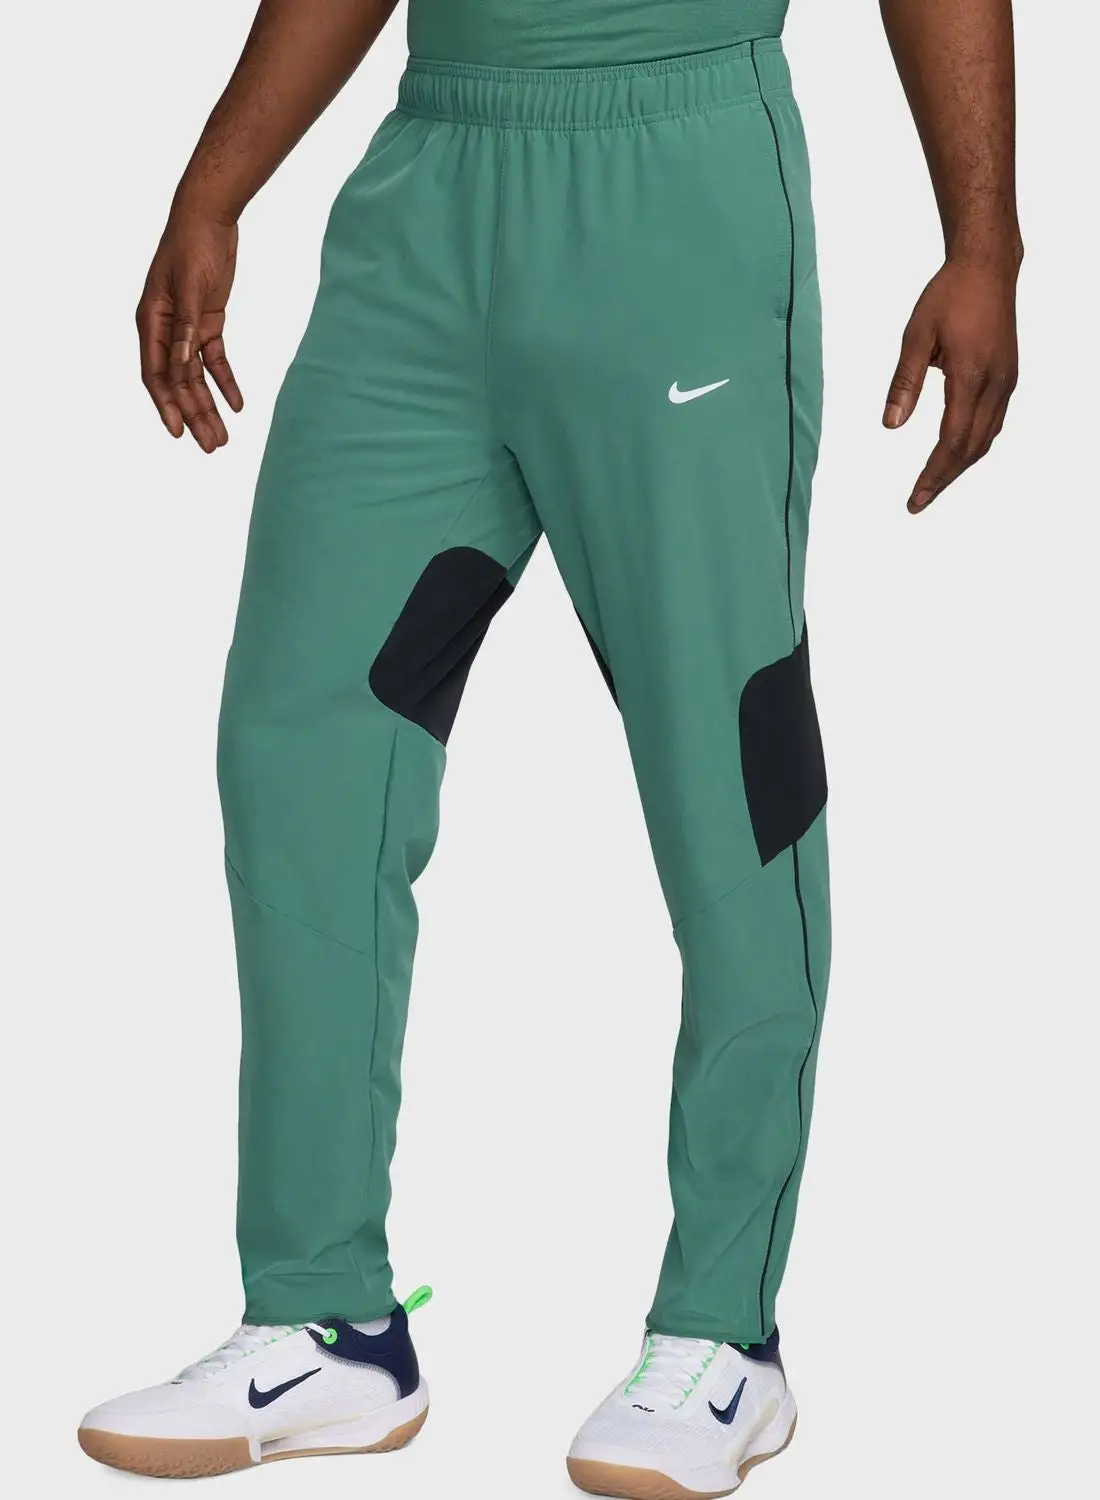 Nike NikeCourt Advantage Dri-FIT Tennis Pants